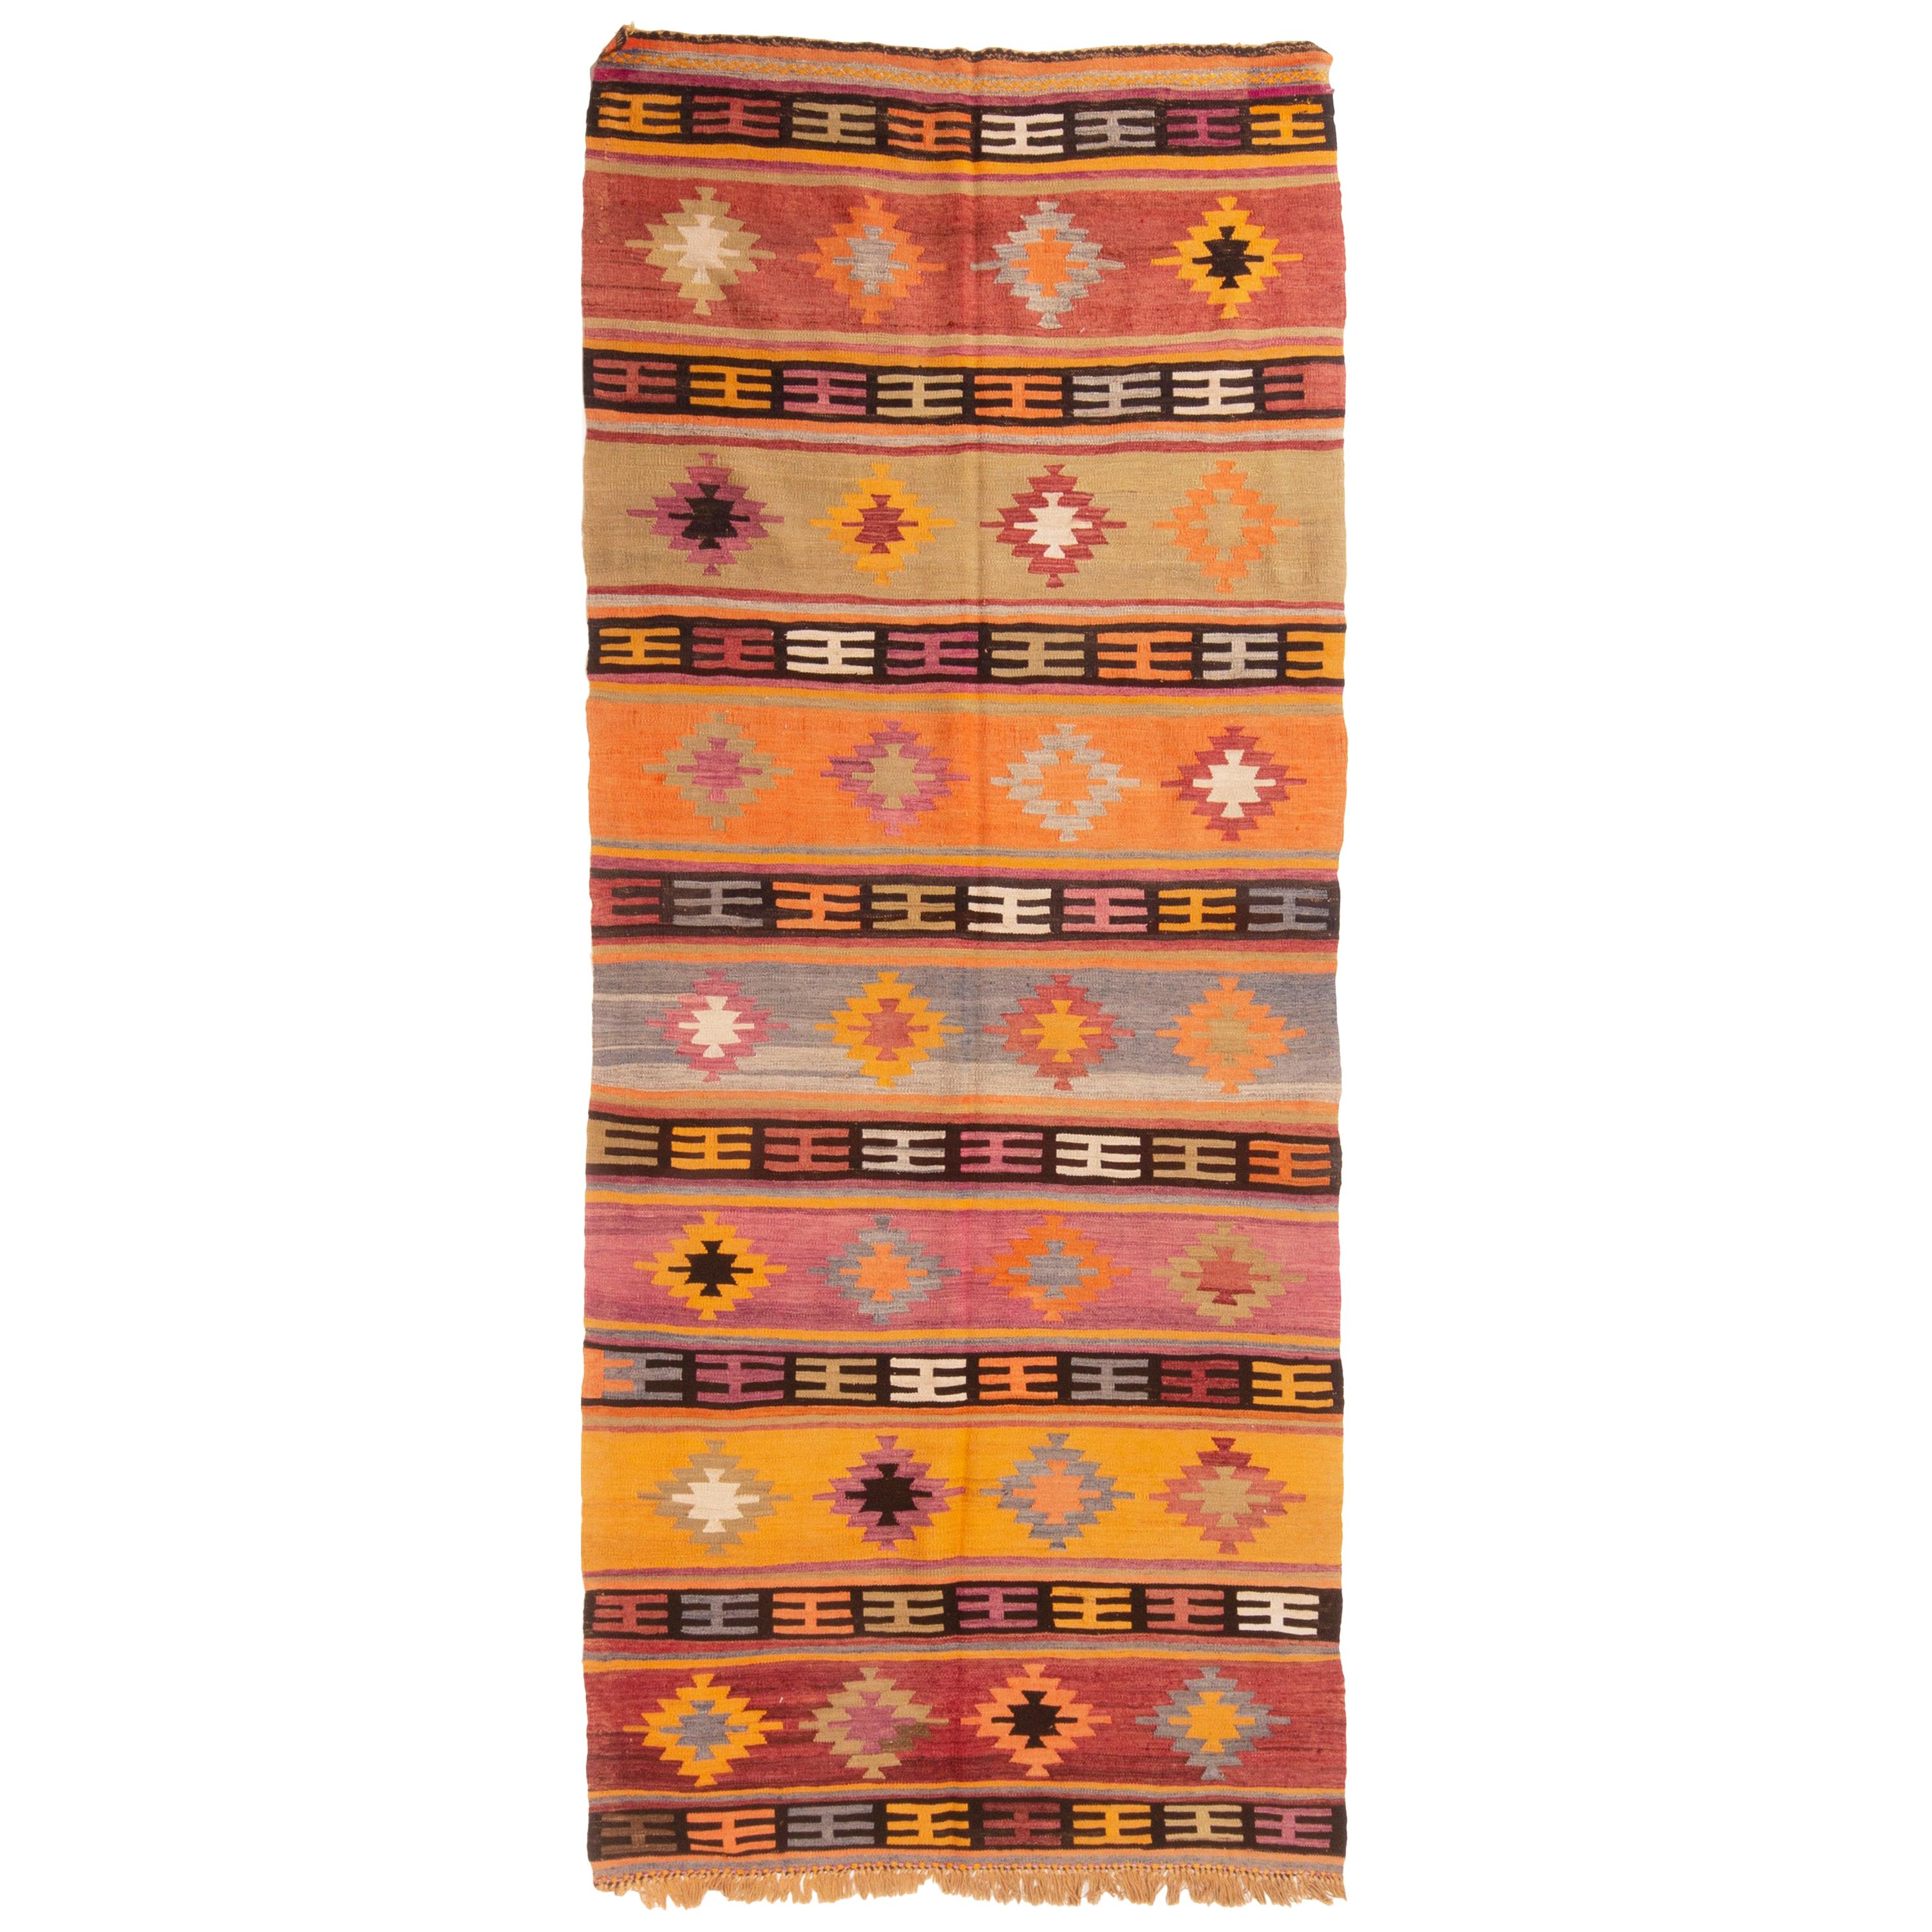 Vintage Turkish Orange and Purple Multi-Color Wool Kilim Rug by Rug & Kilim